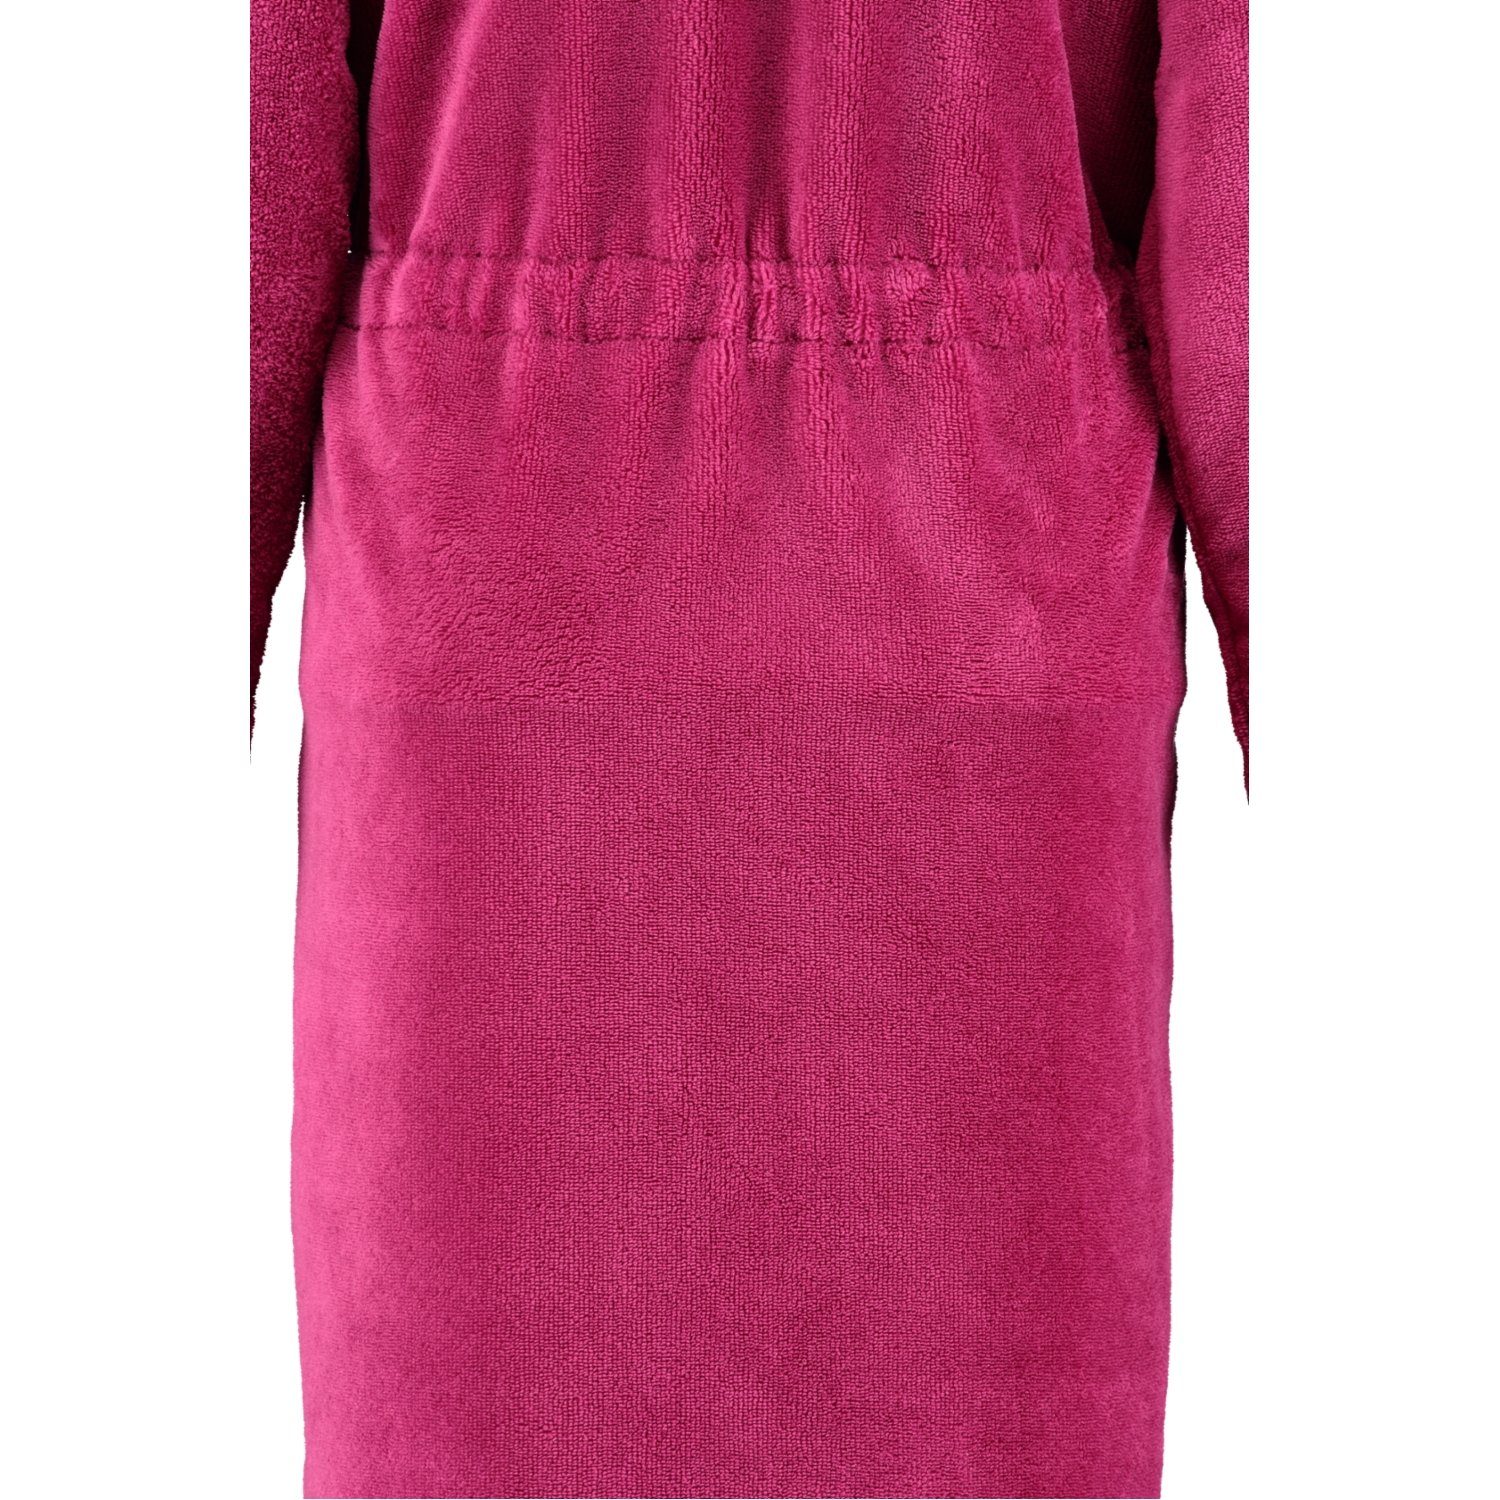 Damenbademantel 22 pink Kurzform, Home Cawö Reißverschluss Reißverschluss, 822, Baumwollmischung, Cawö